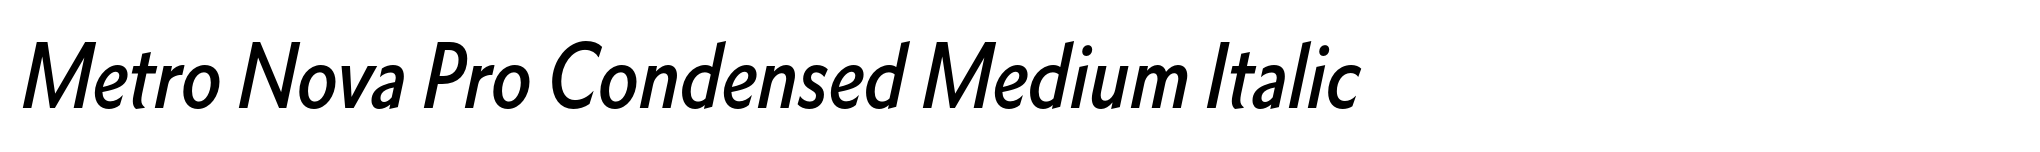 Metro Nova Pro Condensed Medium Italic image